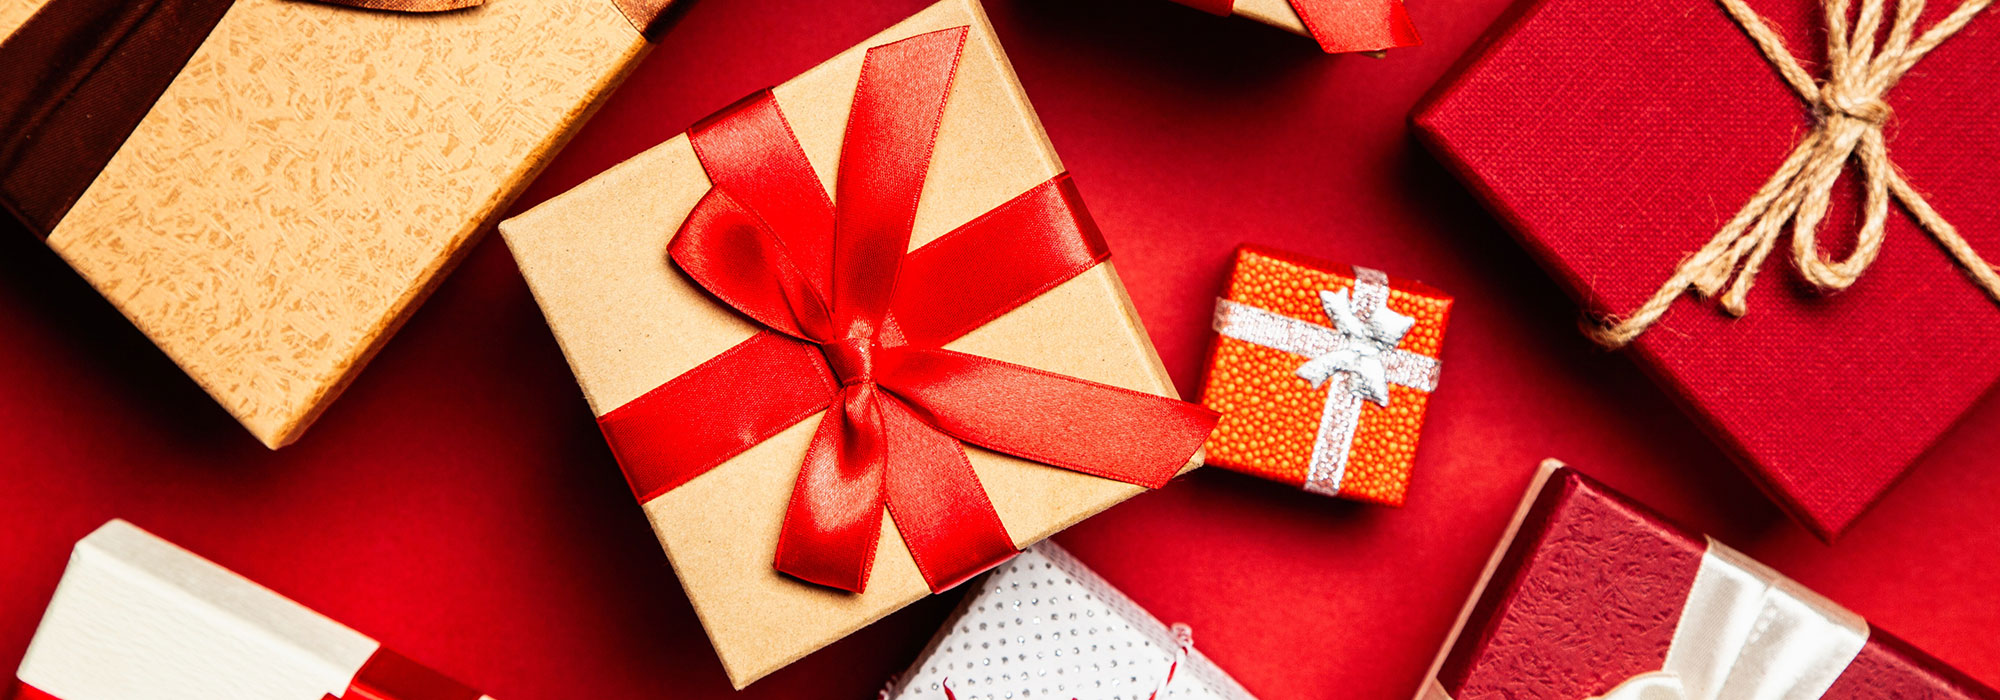 5 raisons de célébrer Noël avec des articles personnalisés